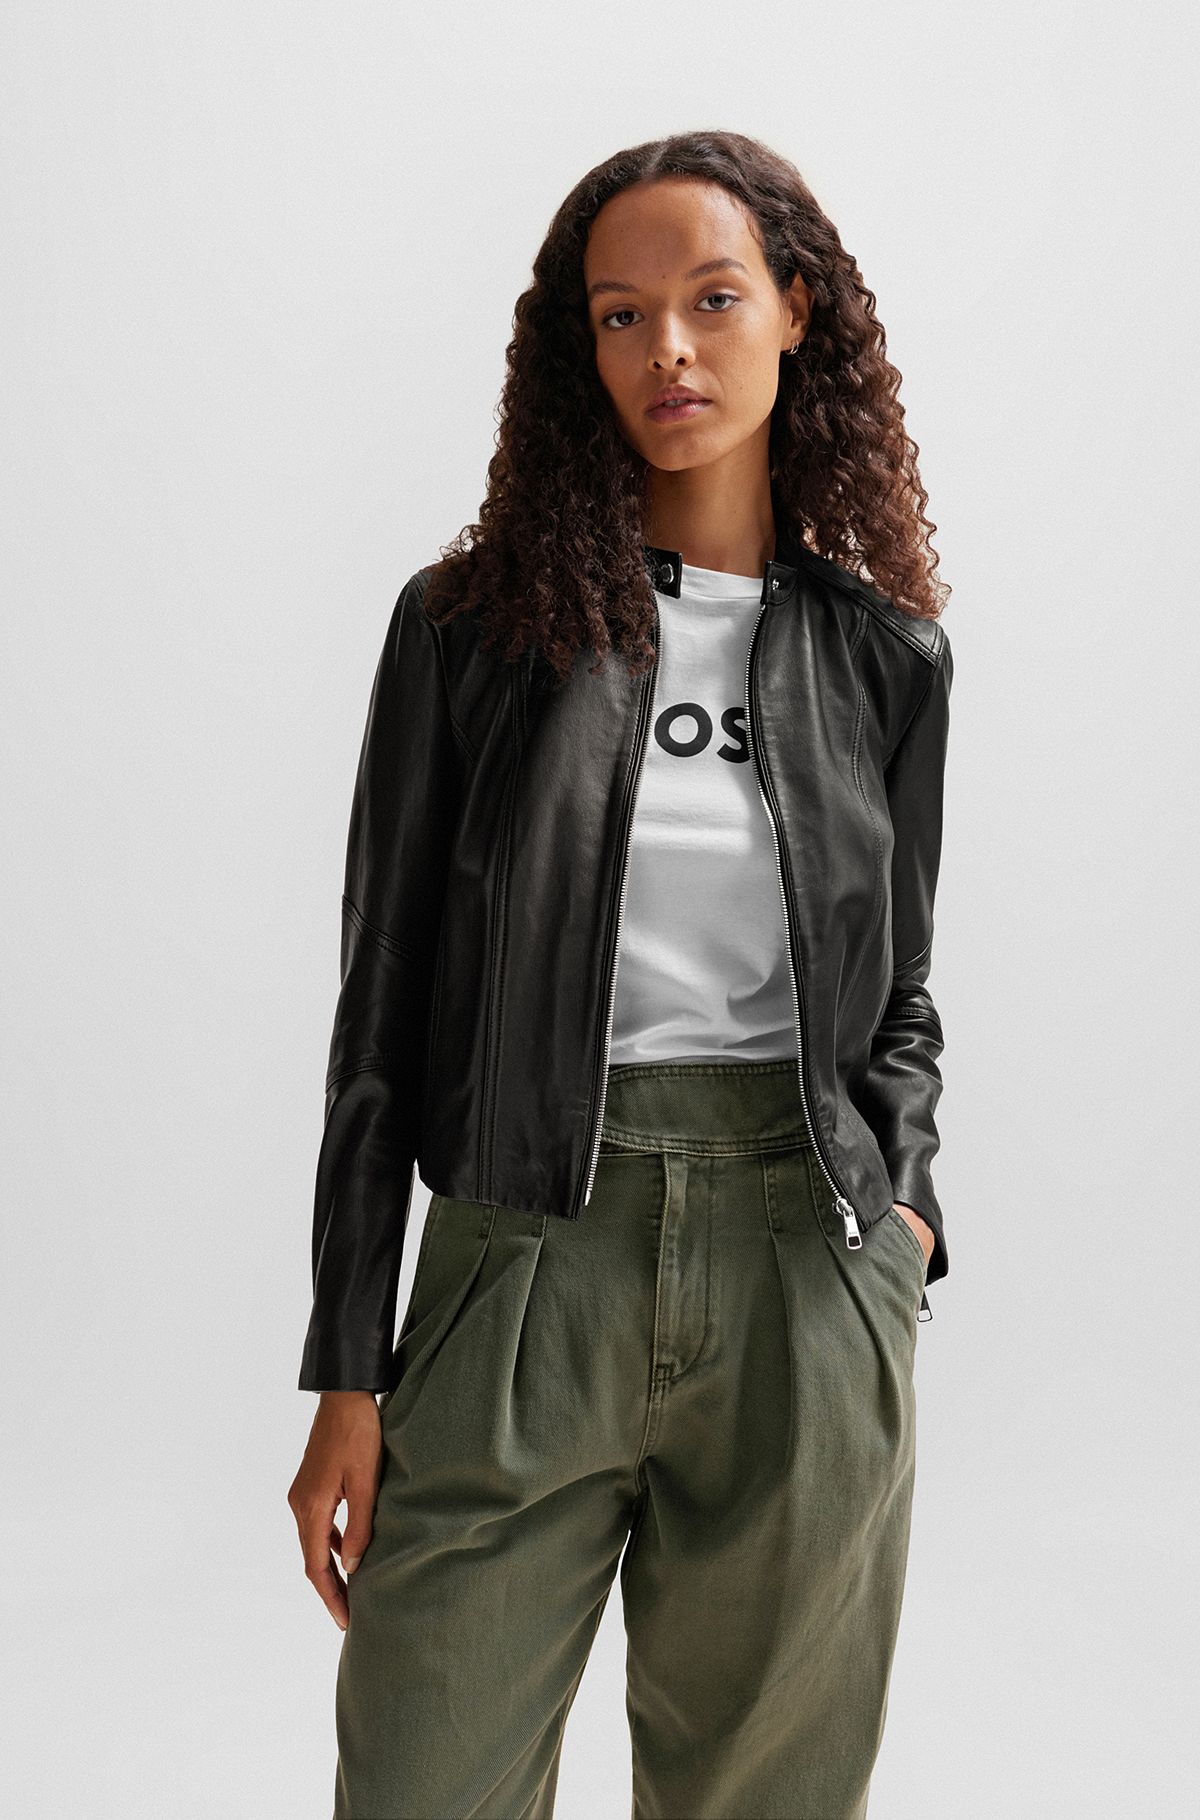 HUGO BOSS  Women's Leather Jackets